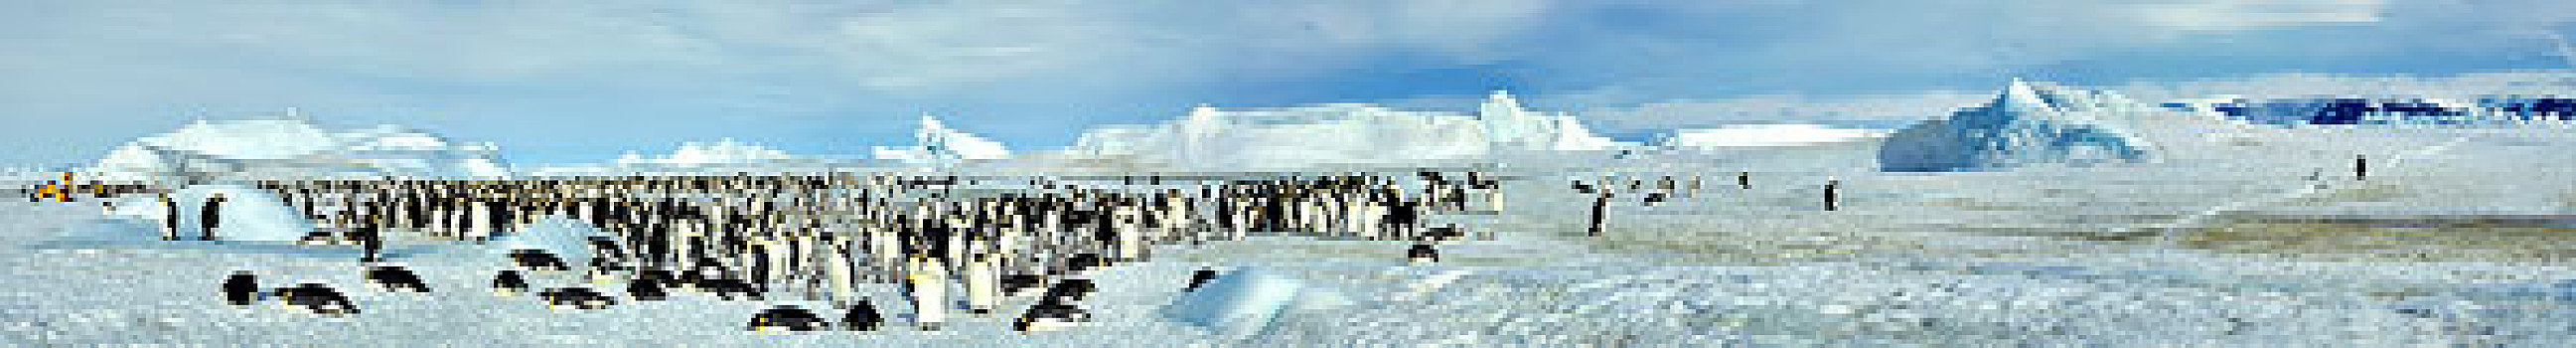 南极,威德尔海,雪丘岛,全景,照片,游客,帝企鹅